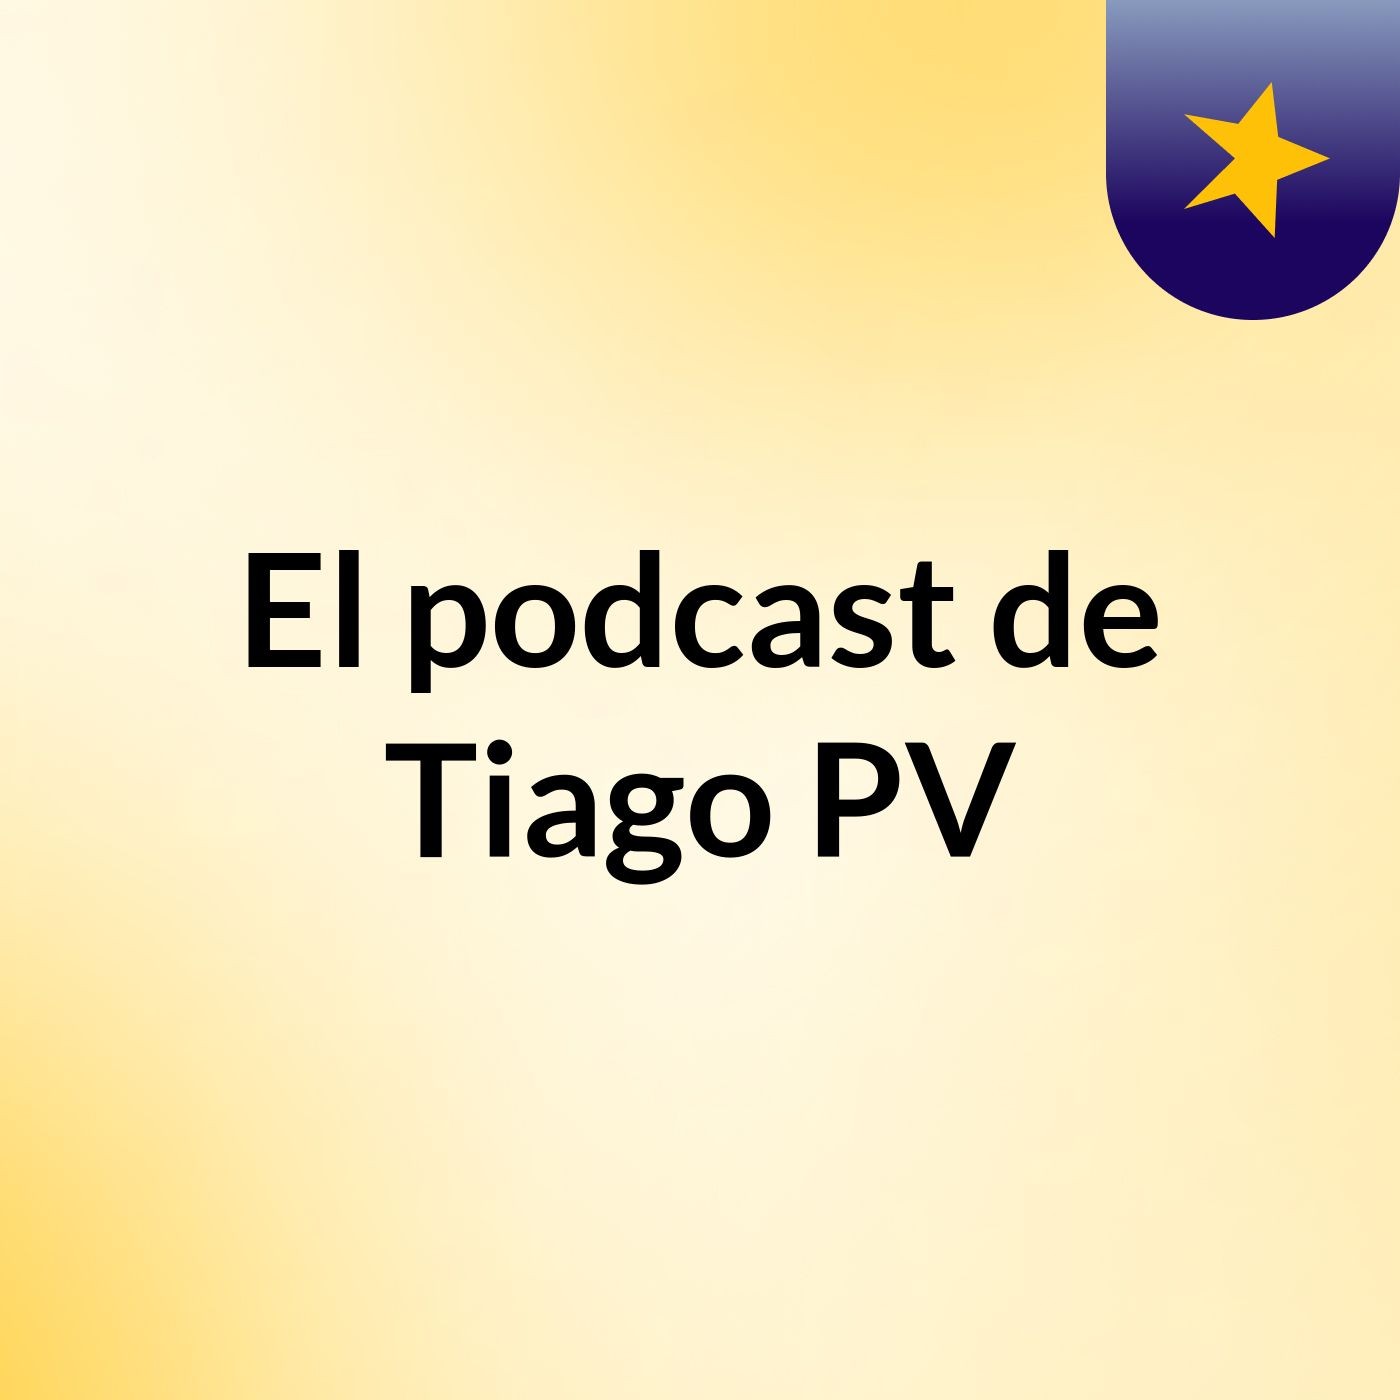 Episodio 3 - El podcast de Tiago PV Mi Proyecto Innovador